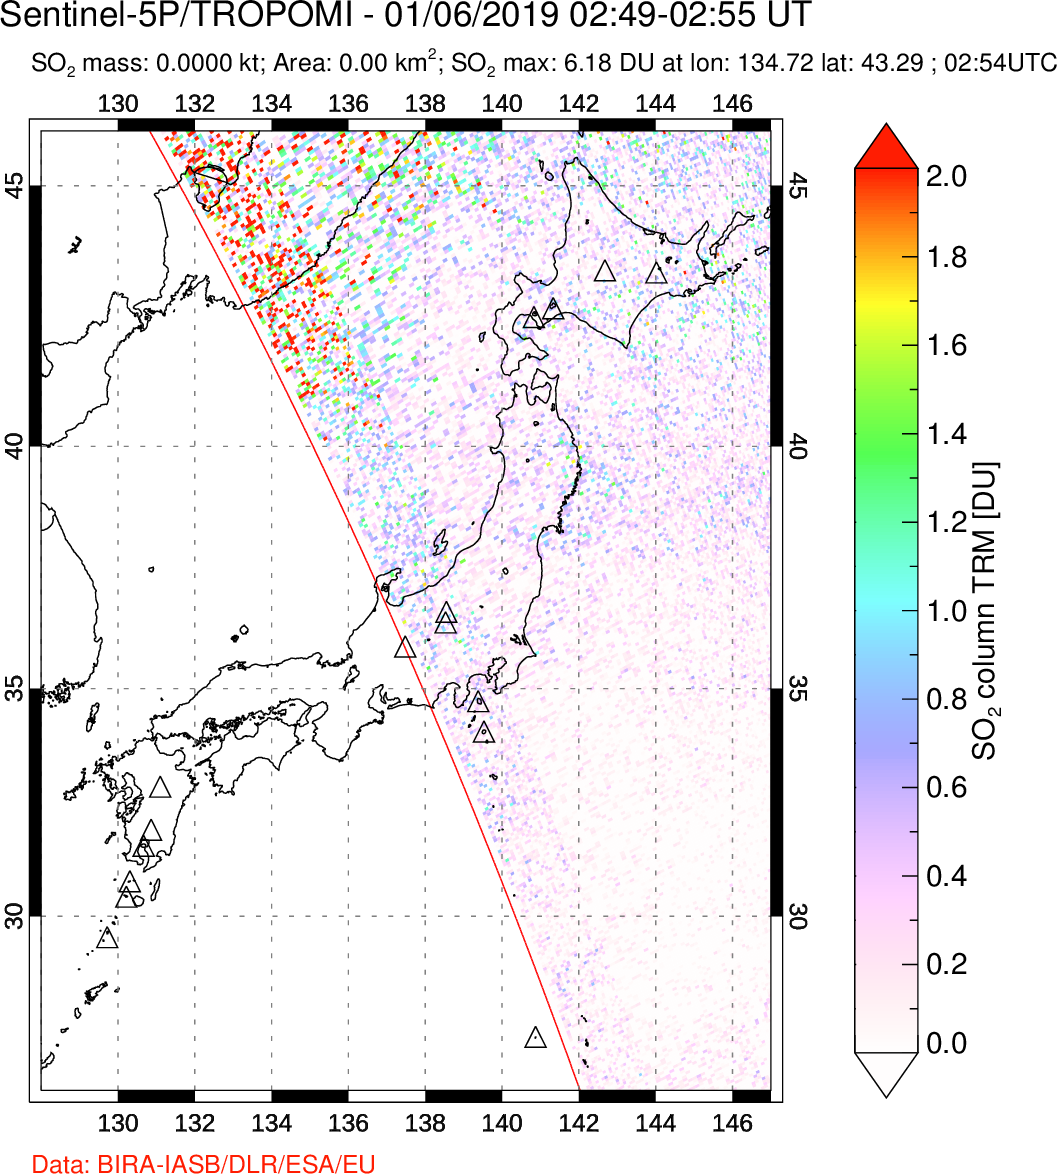 A sulfur dioxide image over Japan on Jan 06, 2019.